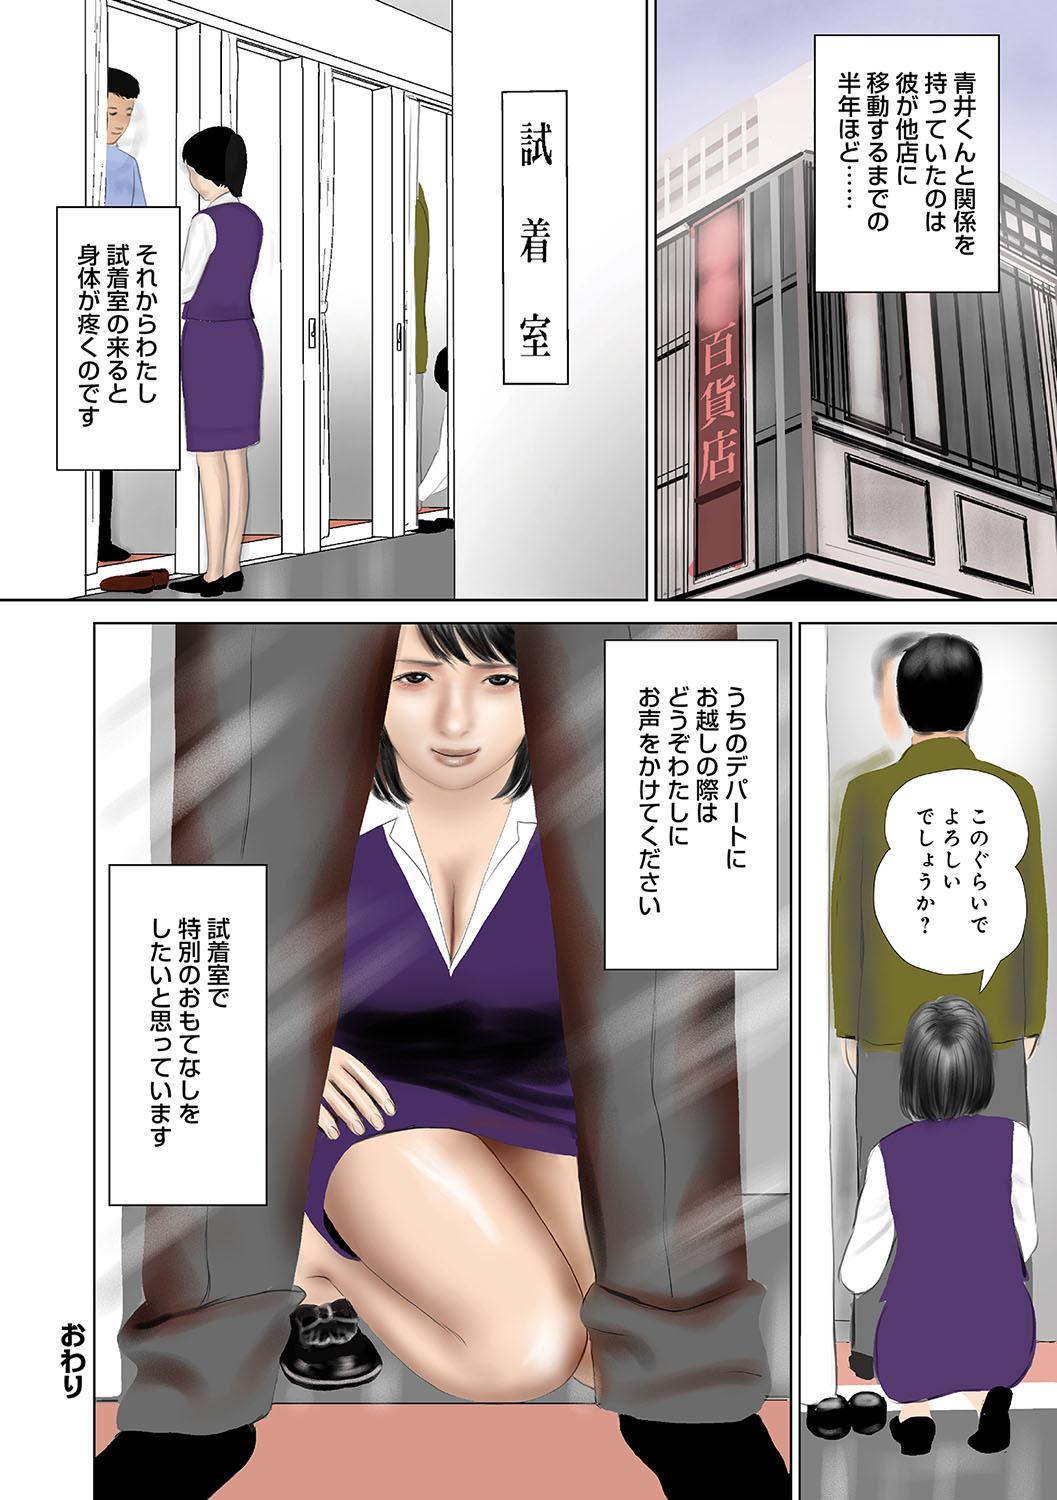 WEB Han Comic Geki Yaba! Vol.96 74